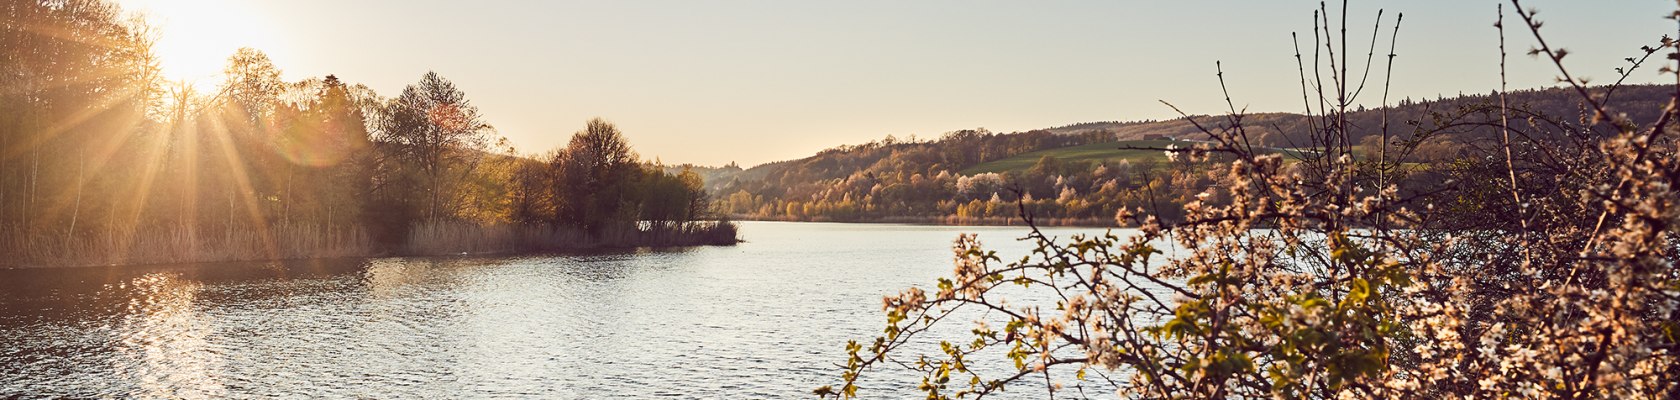 Wienerwaldsee, © Andreas Hofer